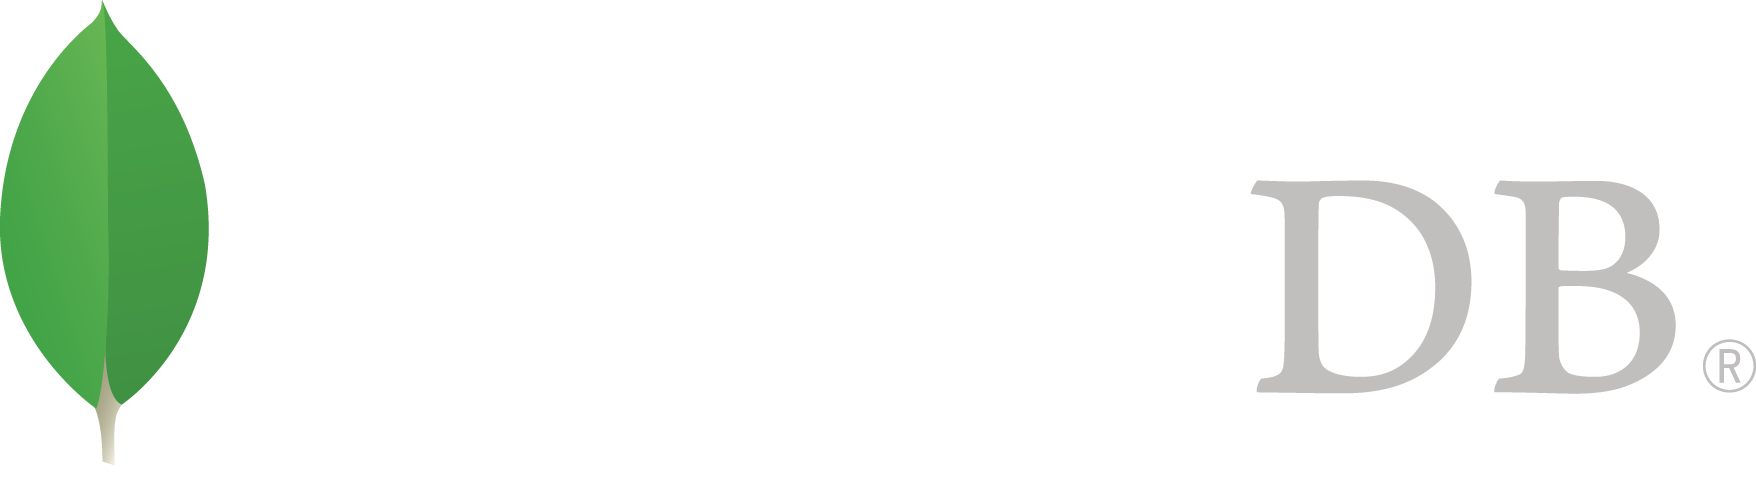 mongodb logo1-76twgcu2dm